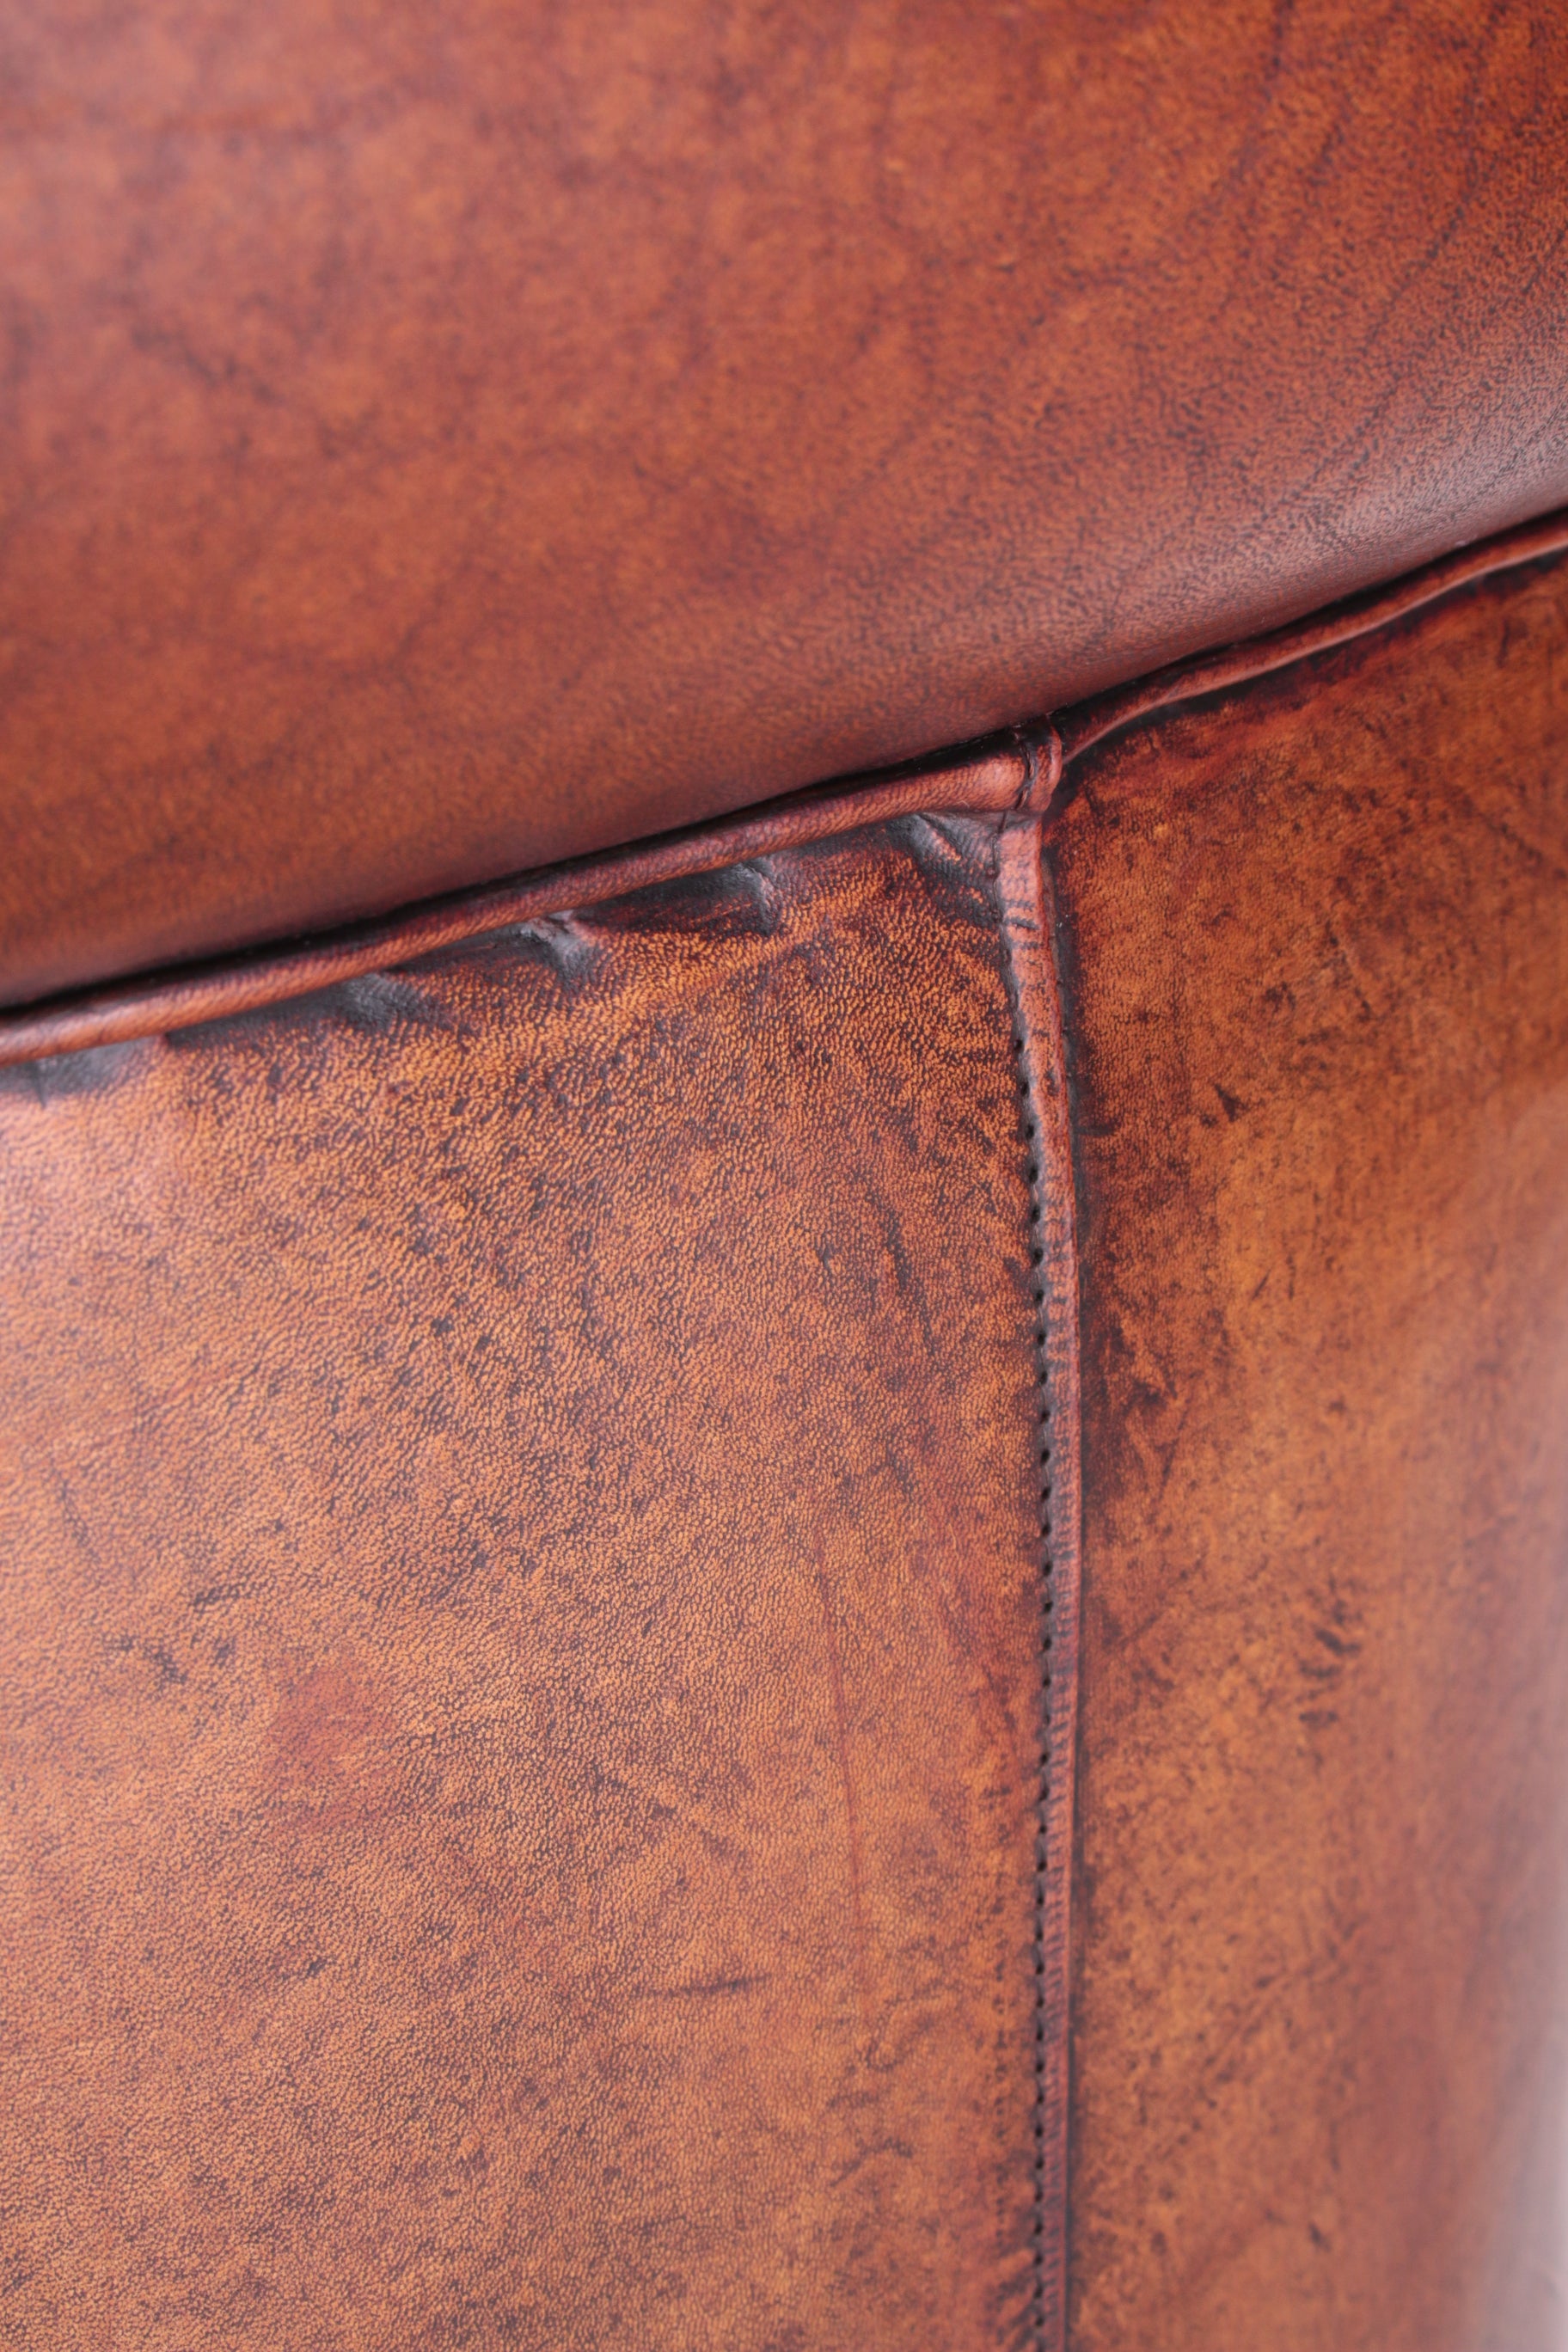 Vintage Schaapsleren Fauteuil met een mooie bruine patina detail rugleuning